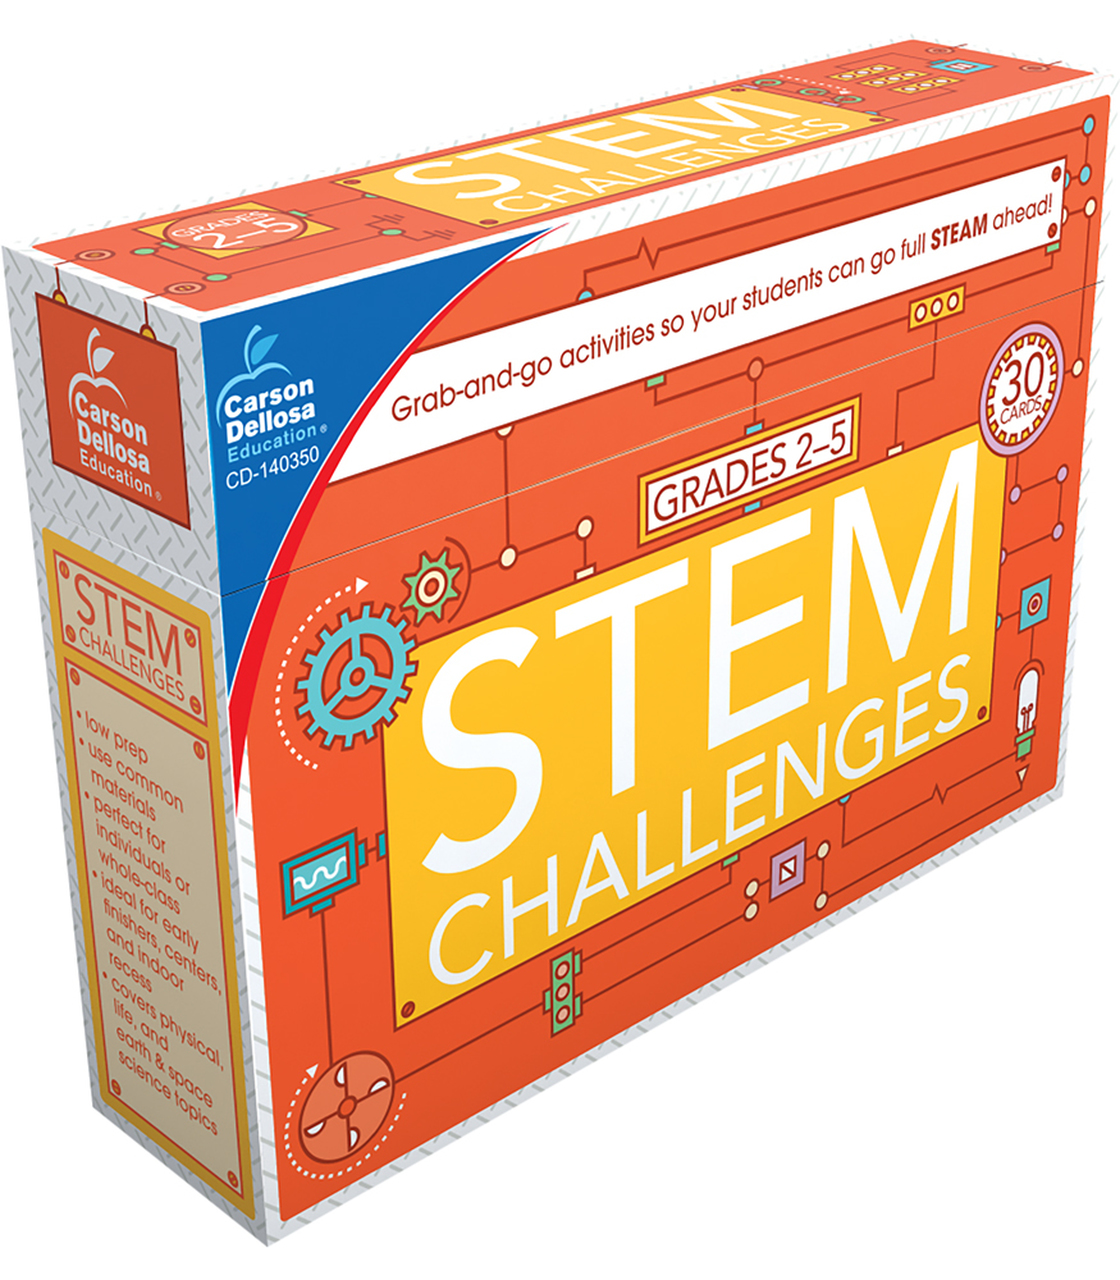 STEM challenges for kids